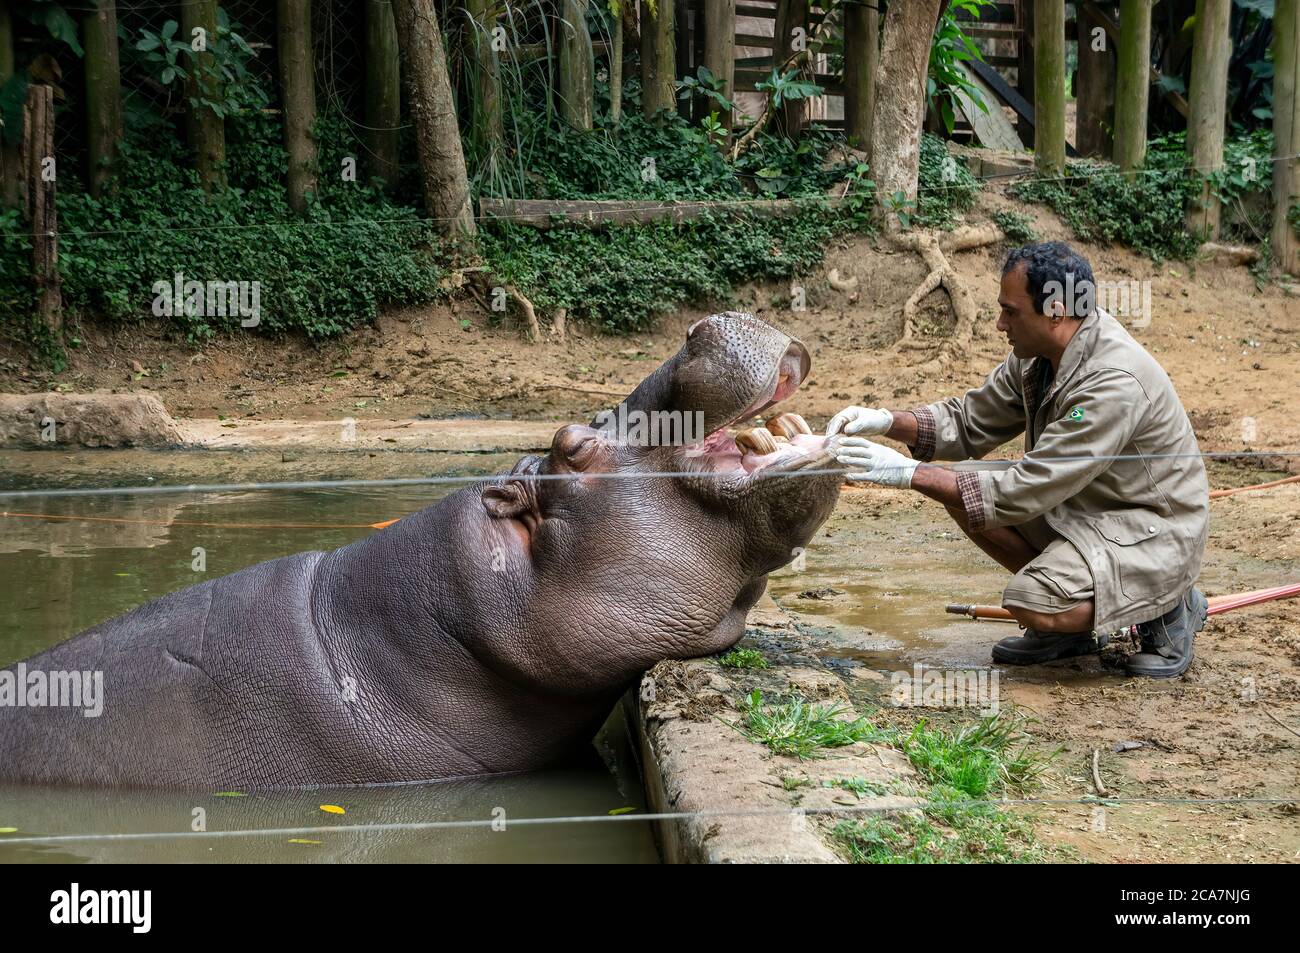 Ippopotamo (Hippopotamus anfibio - grande, per lo più erbivoro, mammifero semiacquatico) rilassato mentre è trattato da un custode dello zoo nel parco Safari Zoo. Foto Stock